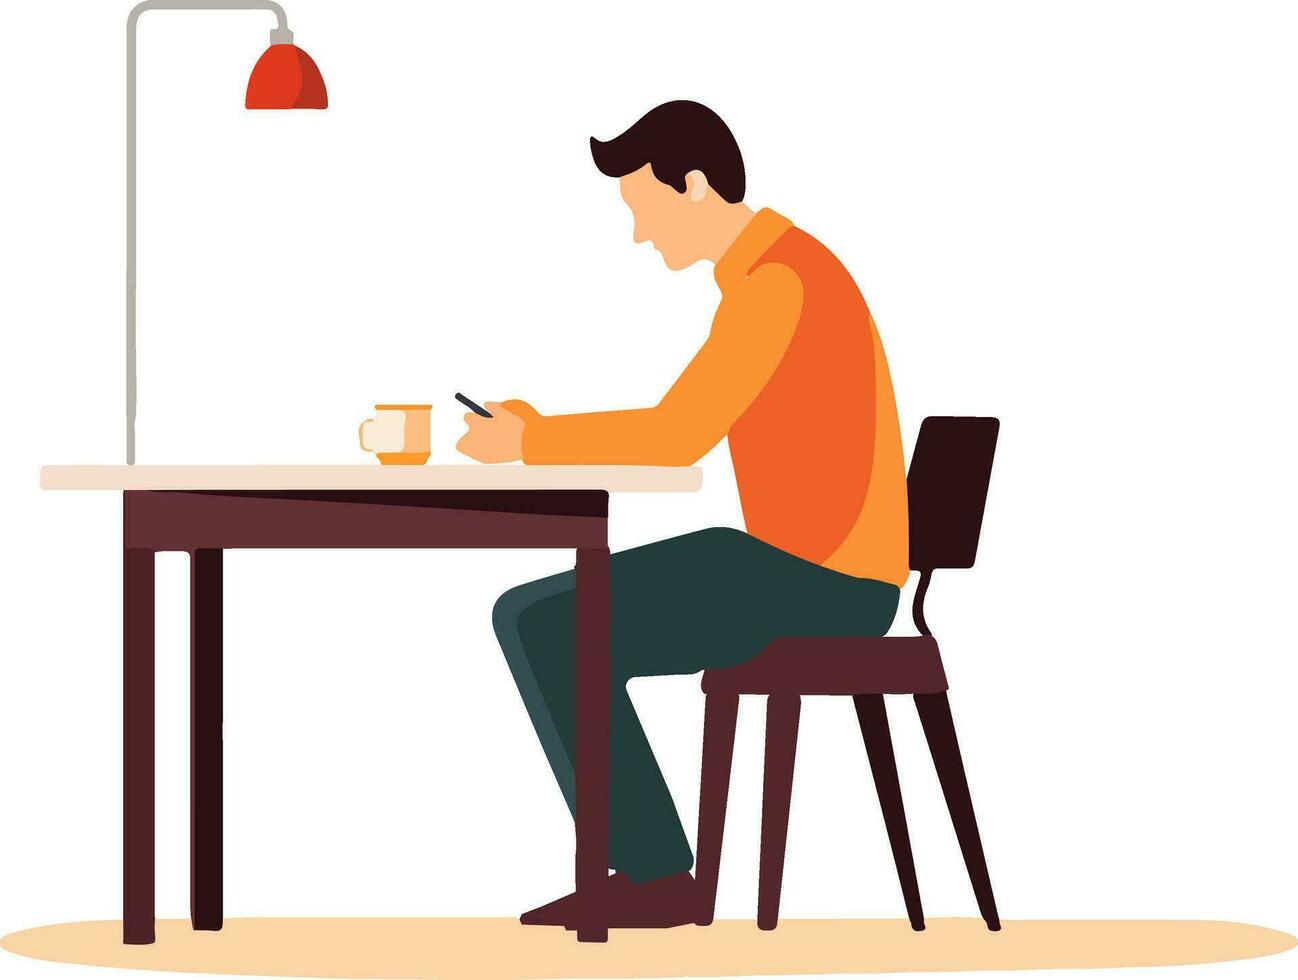 conectado y comprometido - ilustrar un hombre sentado a un mesa, absorto en su teléfono. capturar moderno comunicación y tecnología con esta vector ilustración.